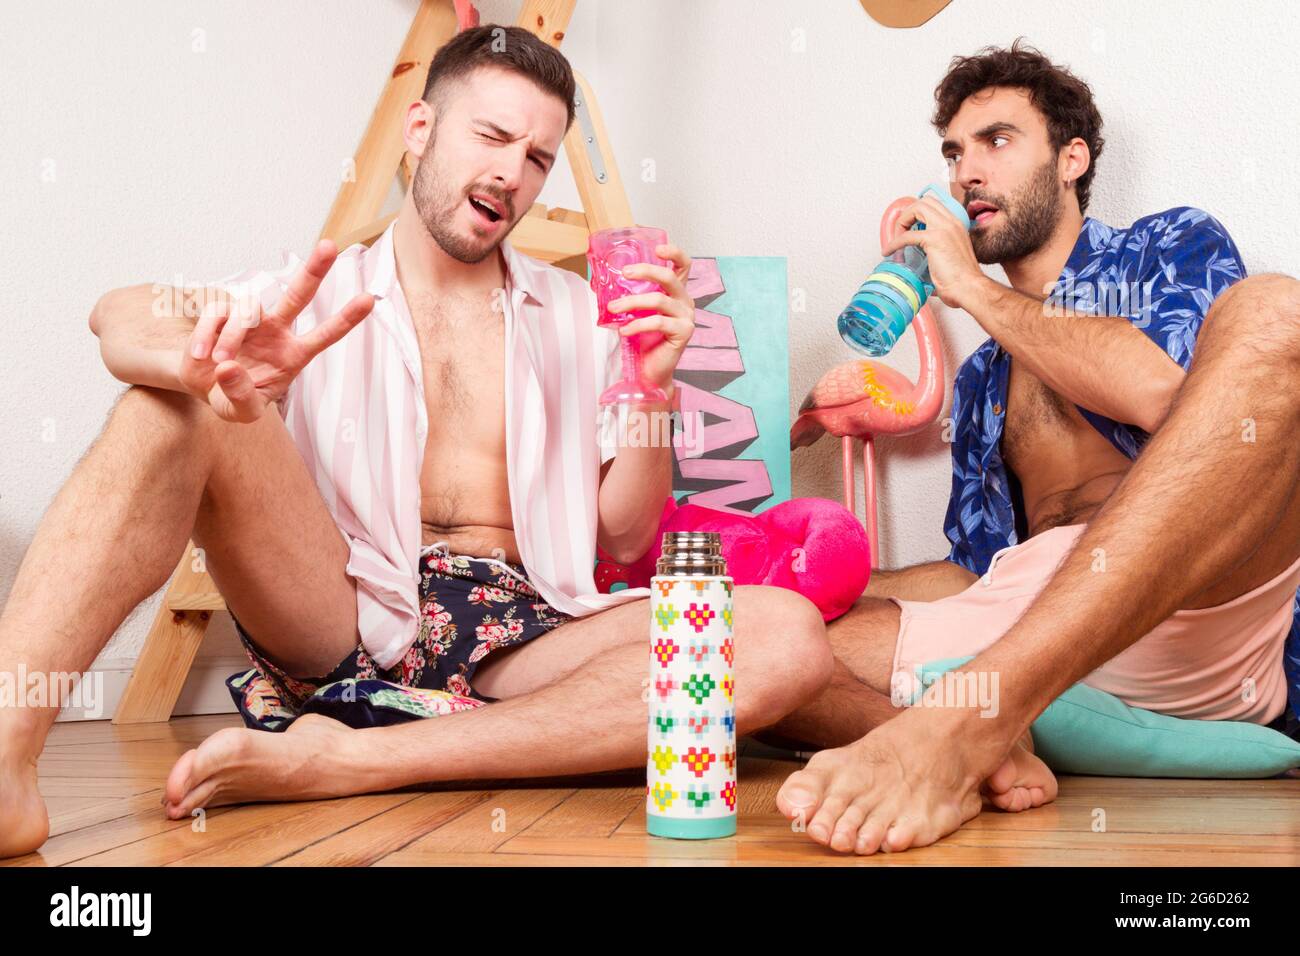 Drôle excités divers adultes homosexuels boyamis dans les tenues d'été avec des boissons prétendant être sur la plage avec flamants roses et s'amuser ensemble Banque D'Images